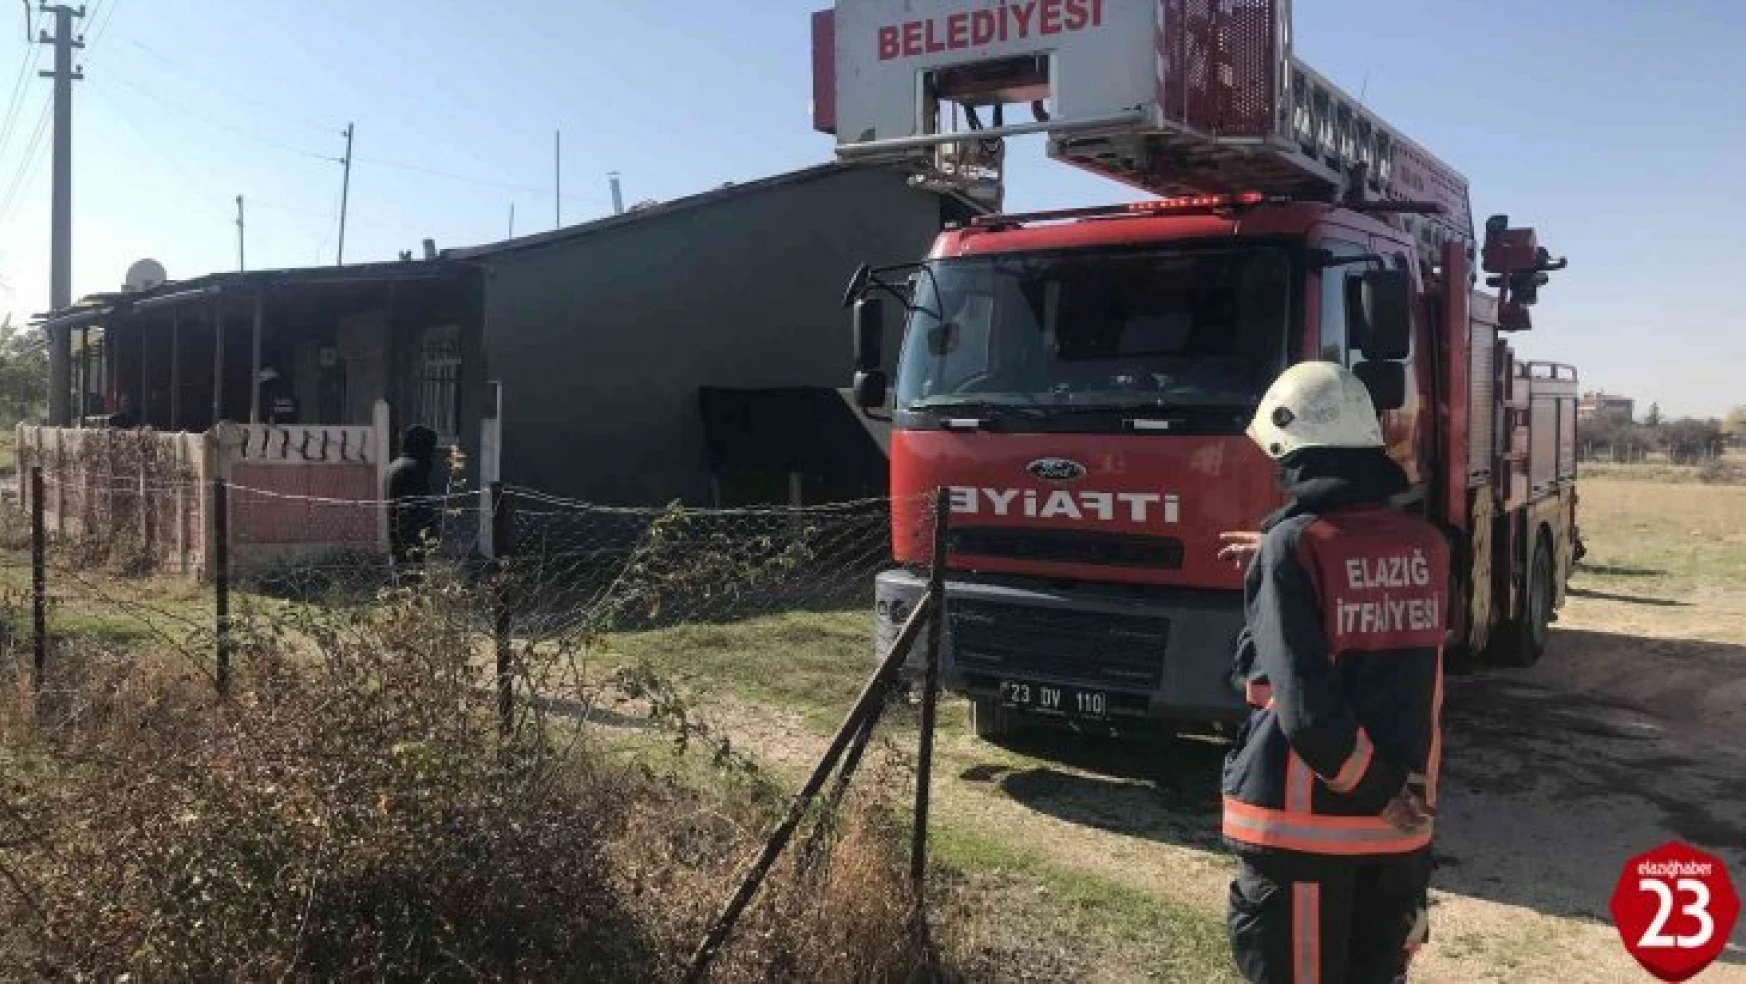 Elazığ'da ev yangını: 1 kişi dumandan etkilendi